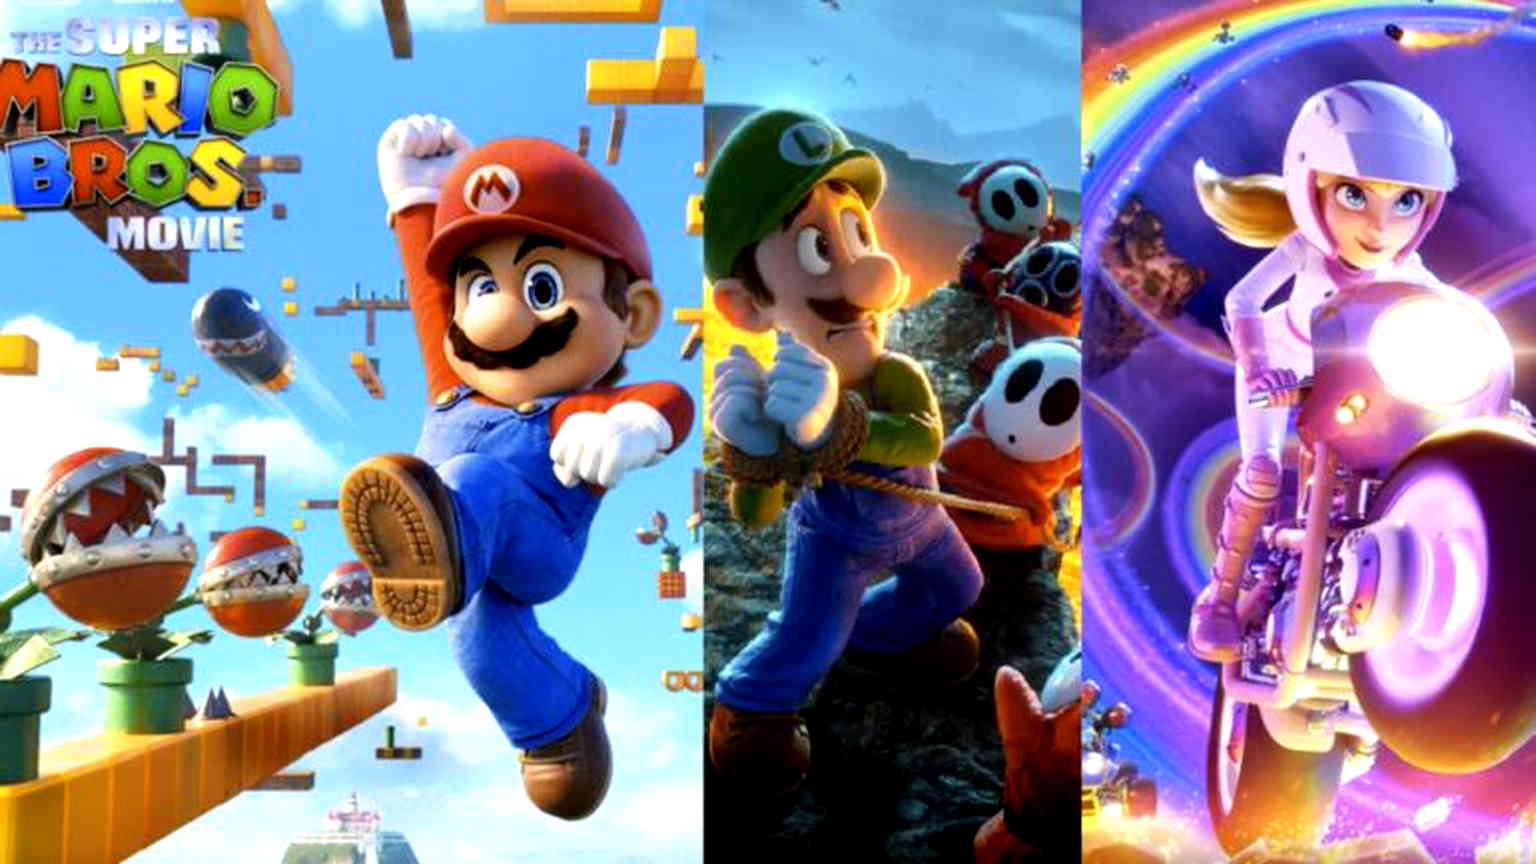 New ‘Super Mario Bros.’ film poster recreates Mario’s iconic pose